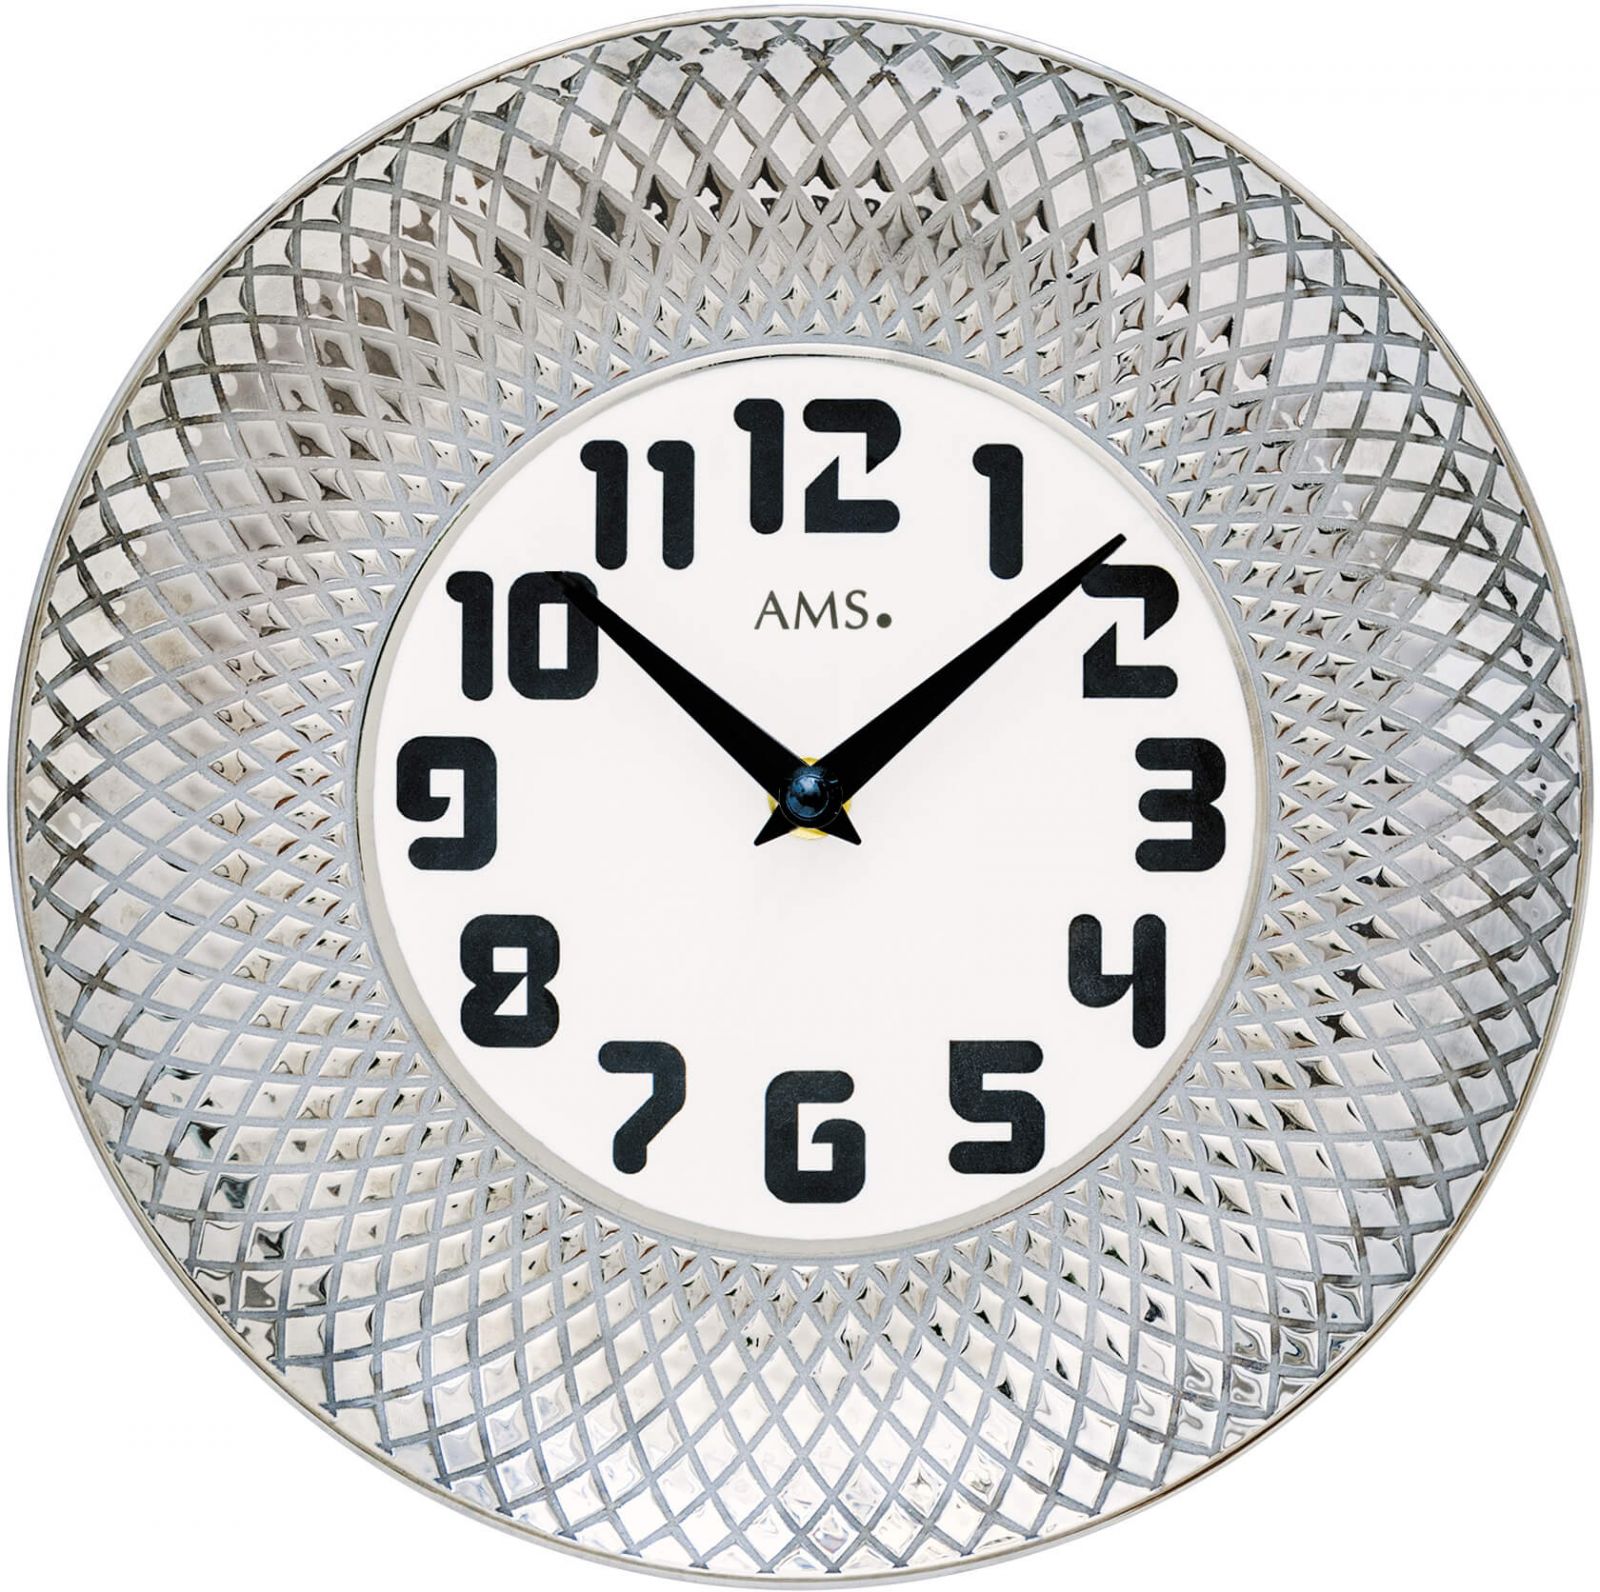 Nástěnné hodiny keramické ams 9614 stříbrná